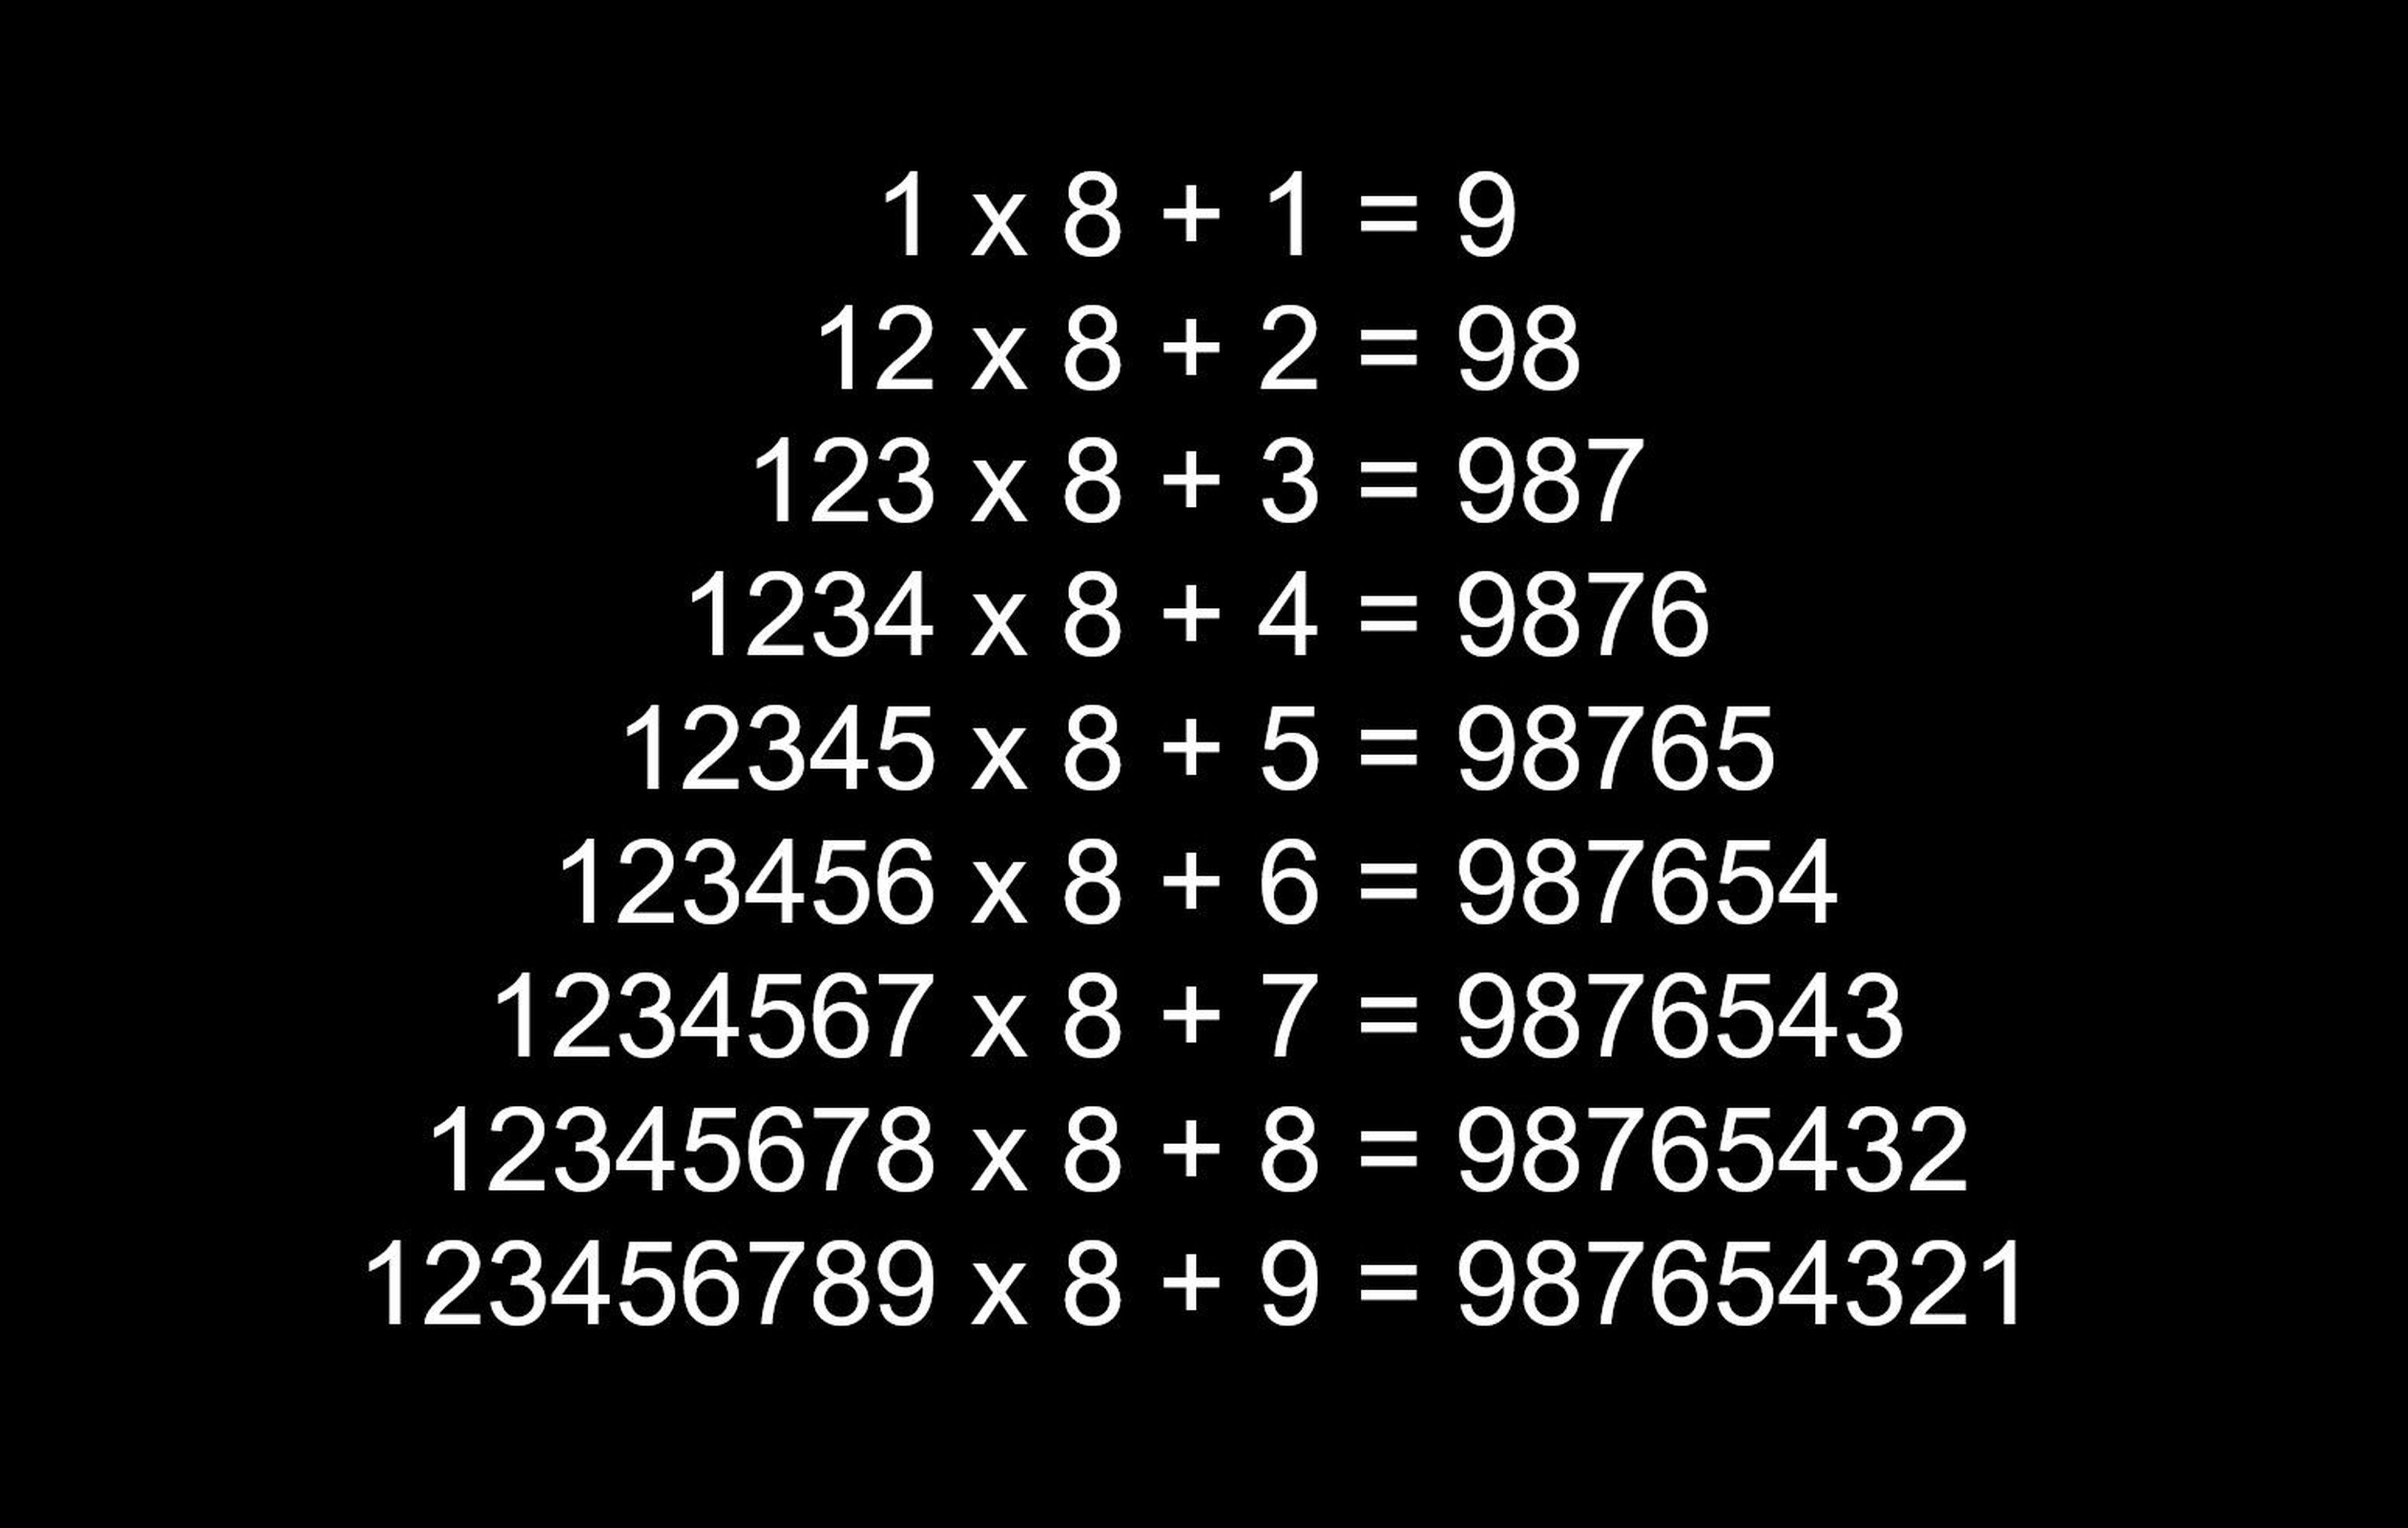 La magia de las matemáticas, y otros divertidos trucos con números